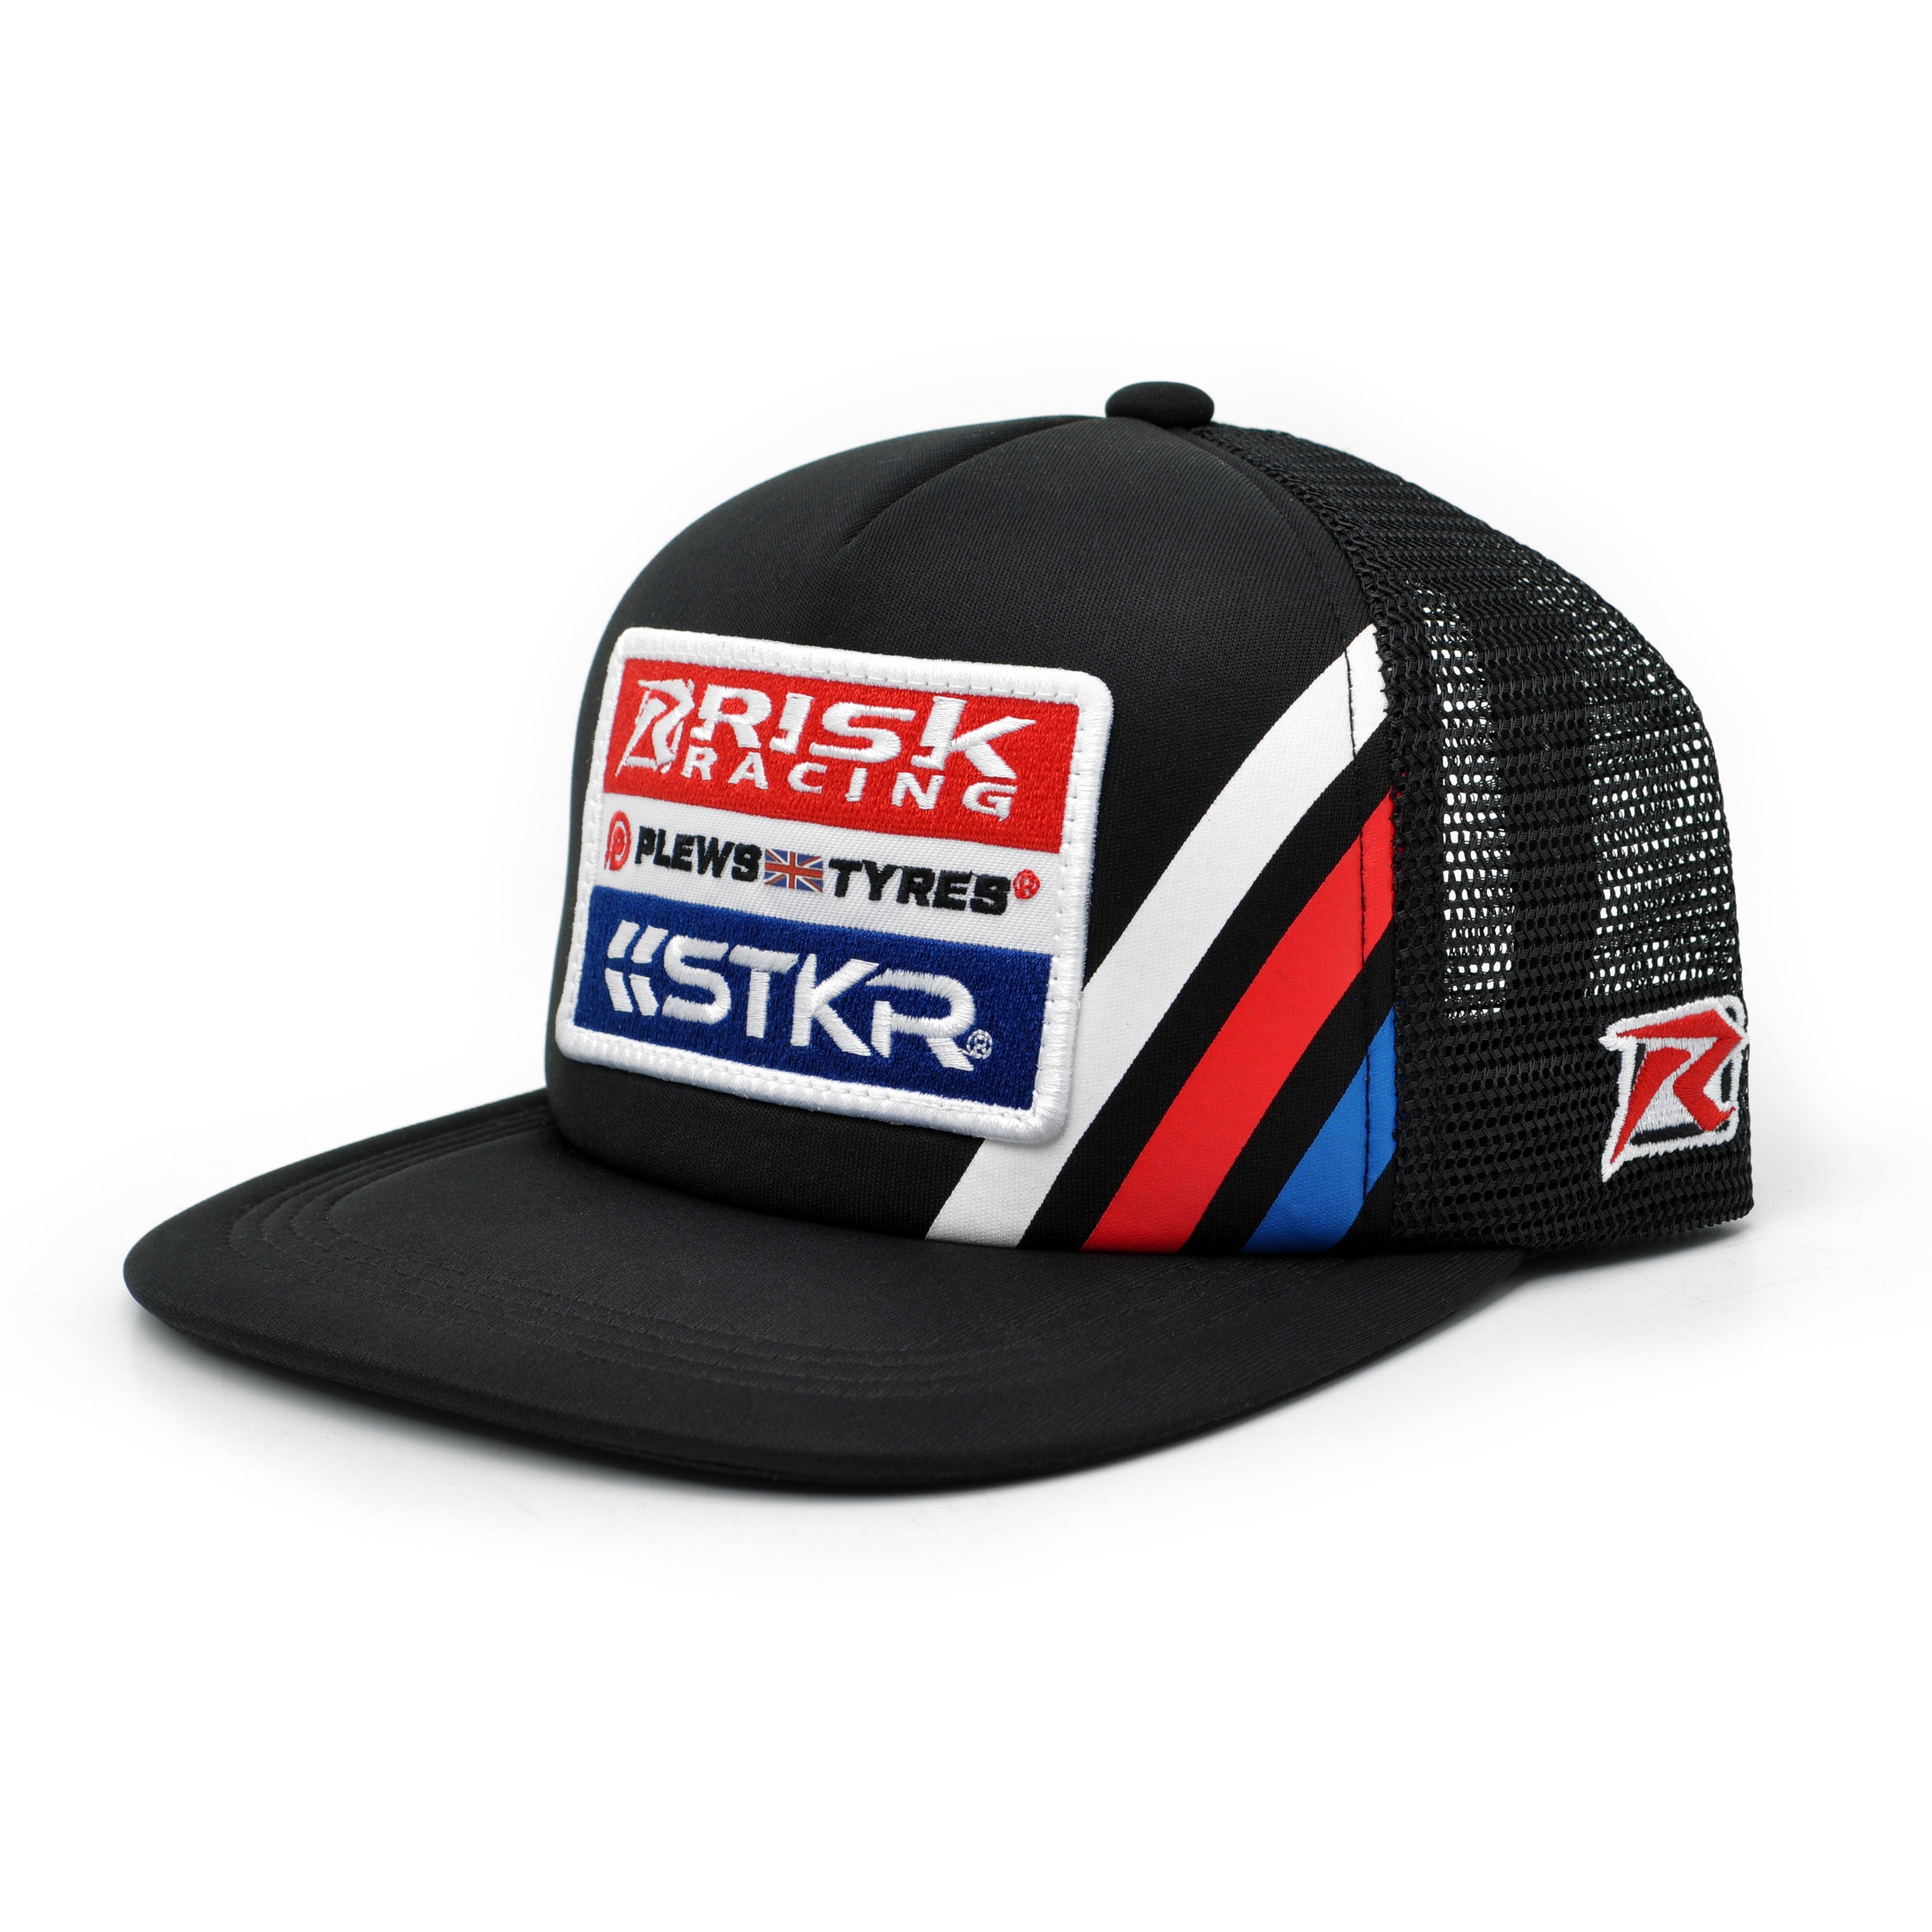 Risk Racing, Plews Tyres, and STKR Black Trucker Snapback Hat